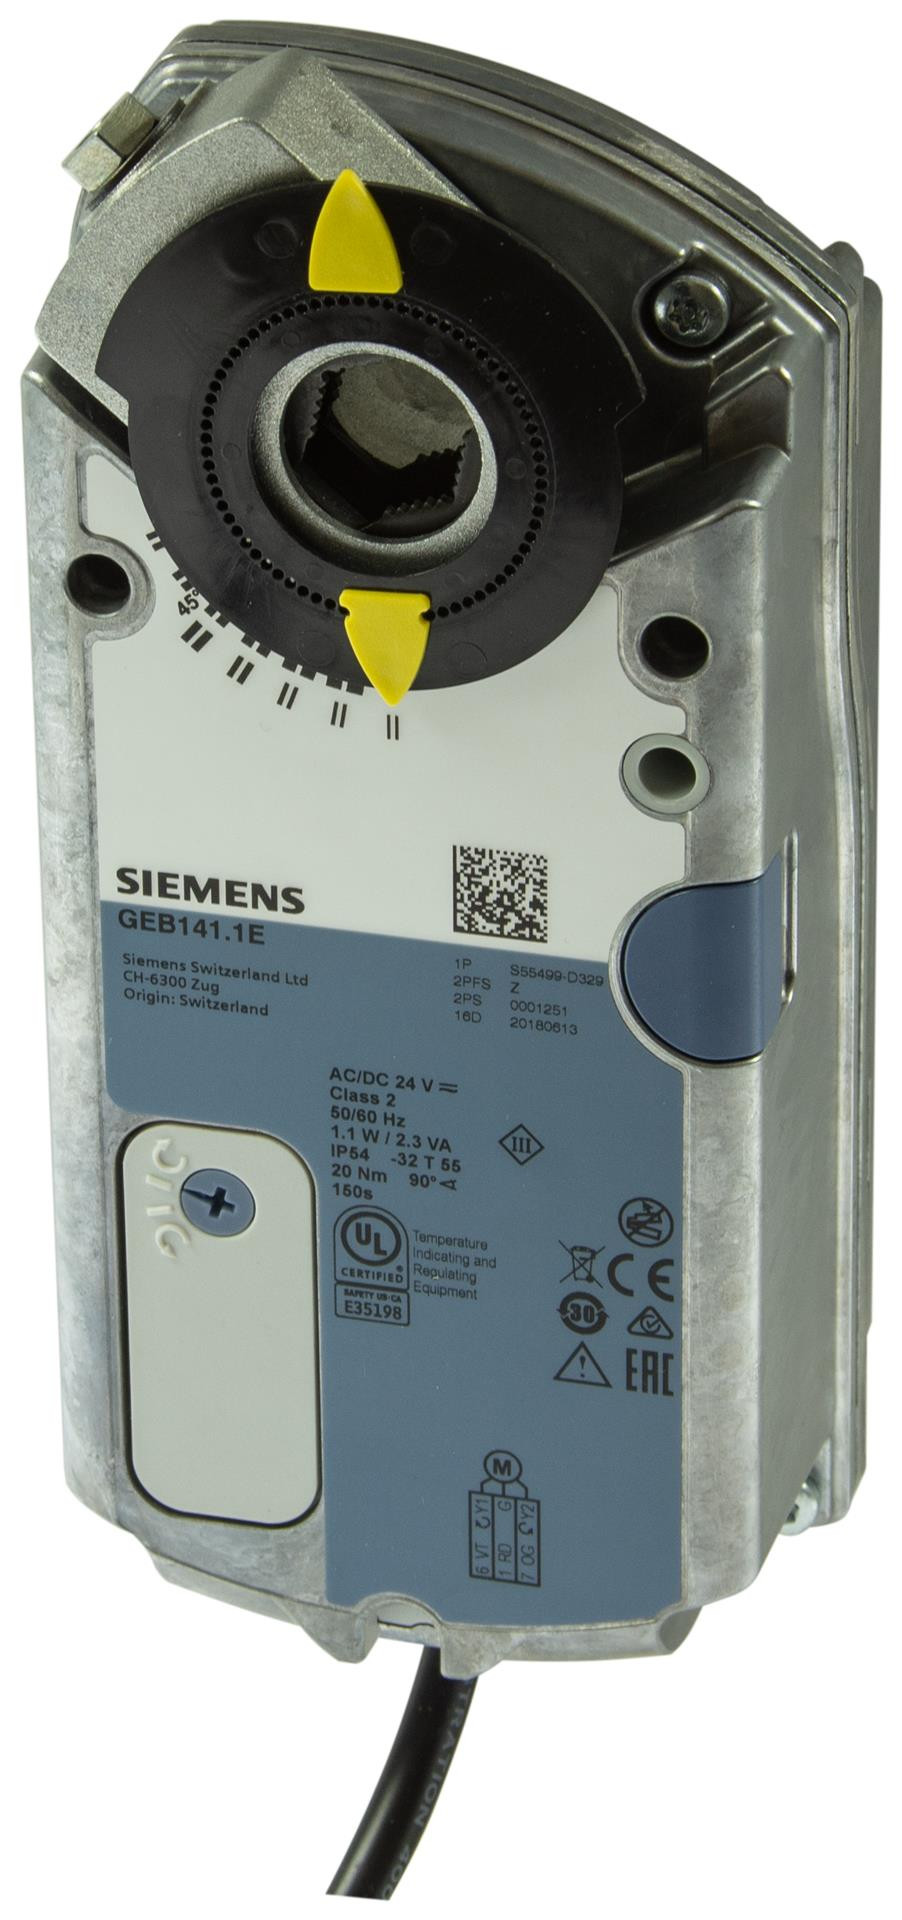 Siemens Luftklappen-Drehantriebe 20 Nm ohne Federrücklauf GEB346.1E